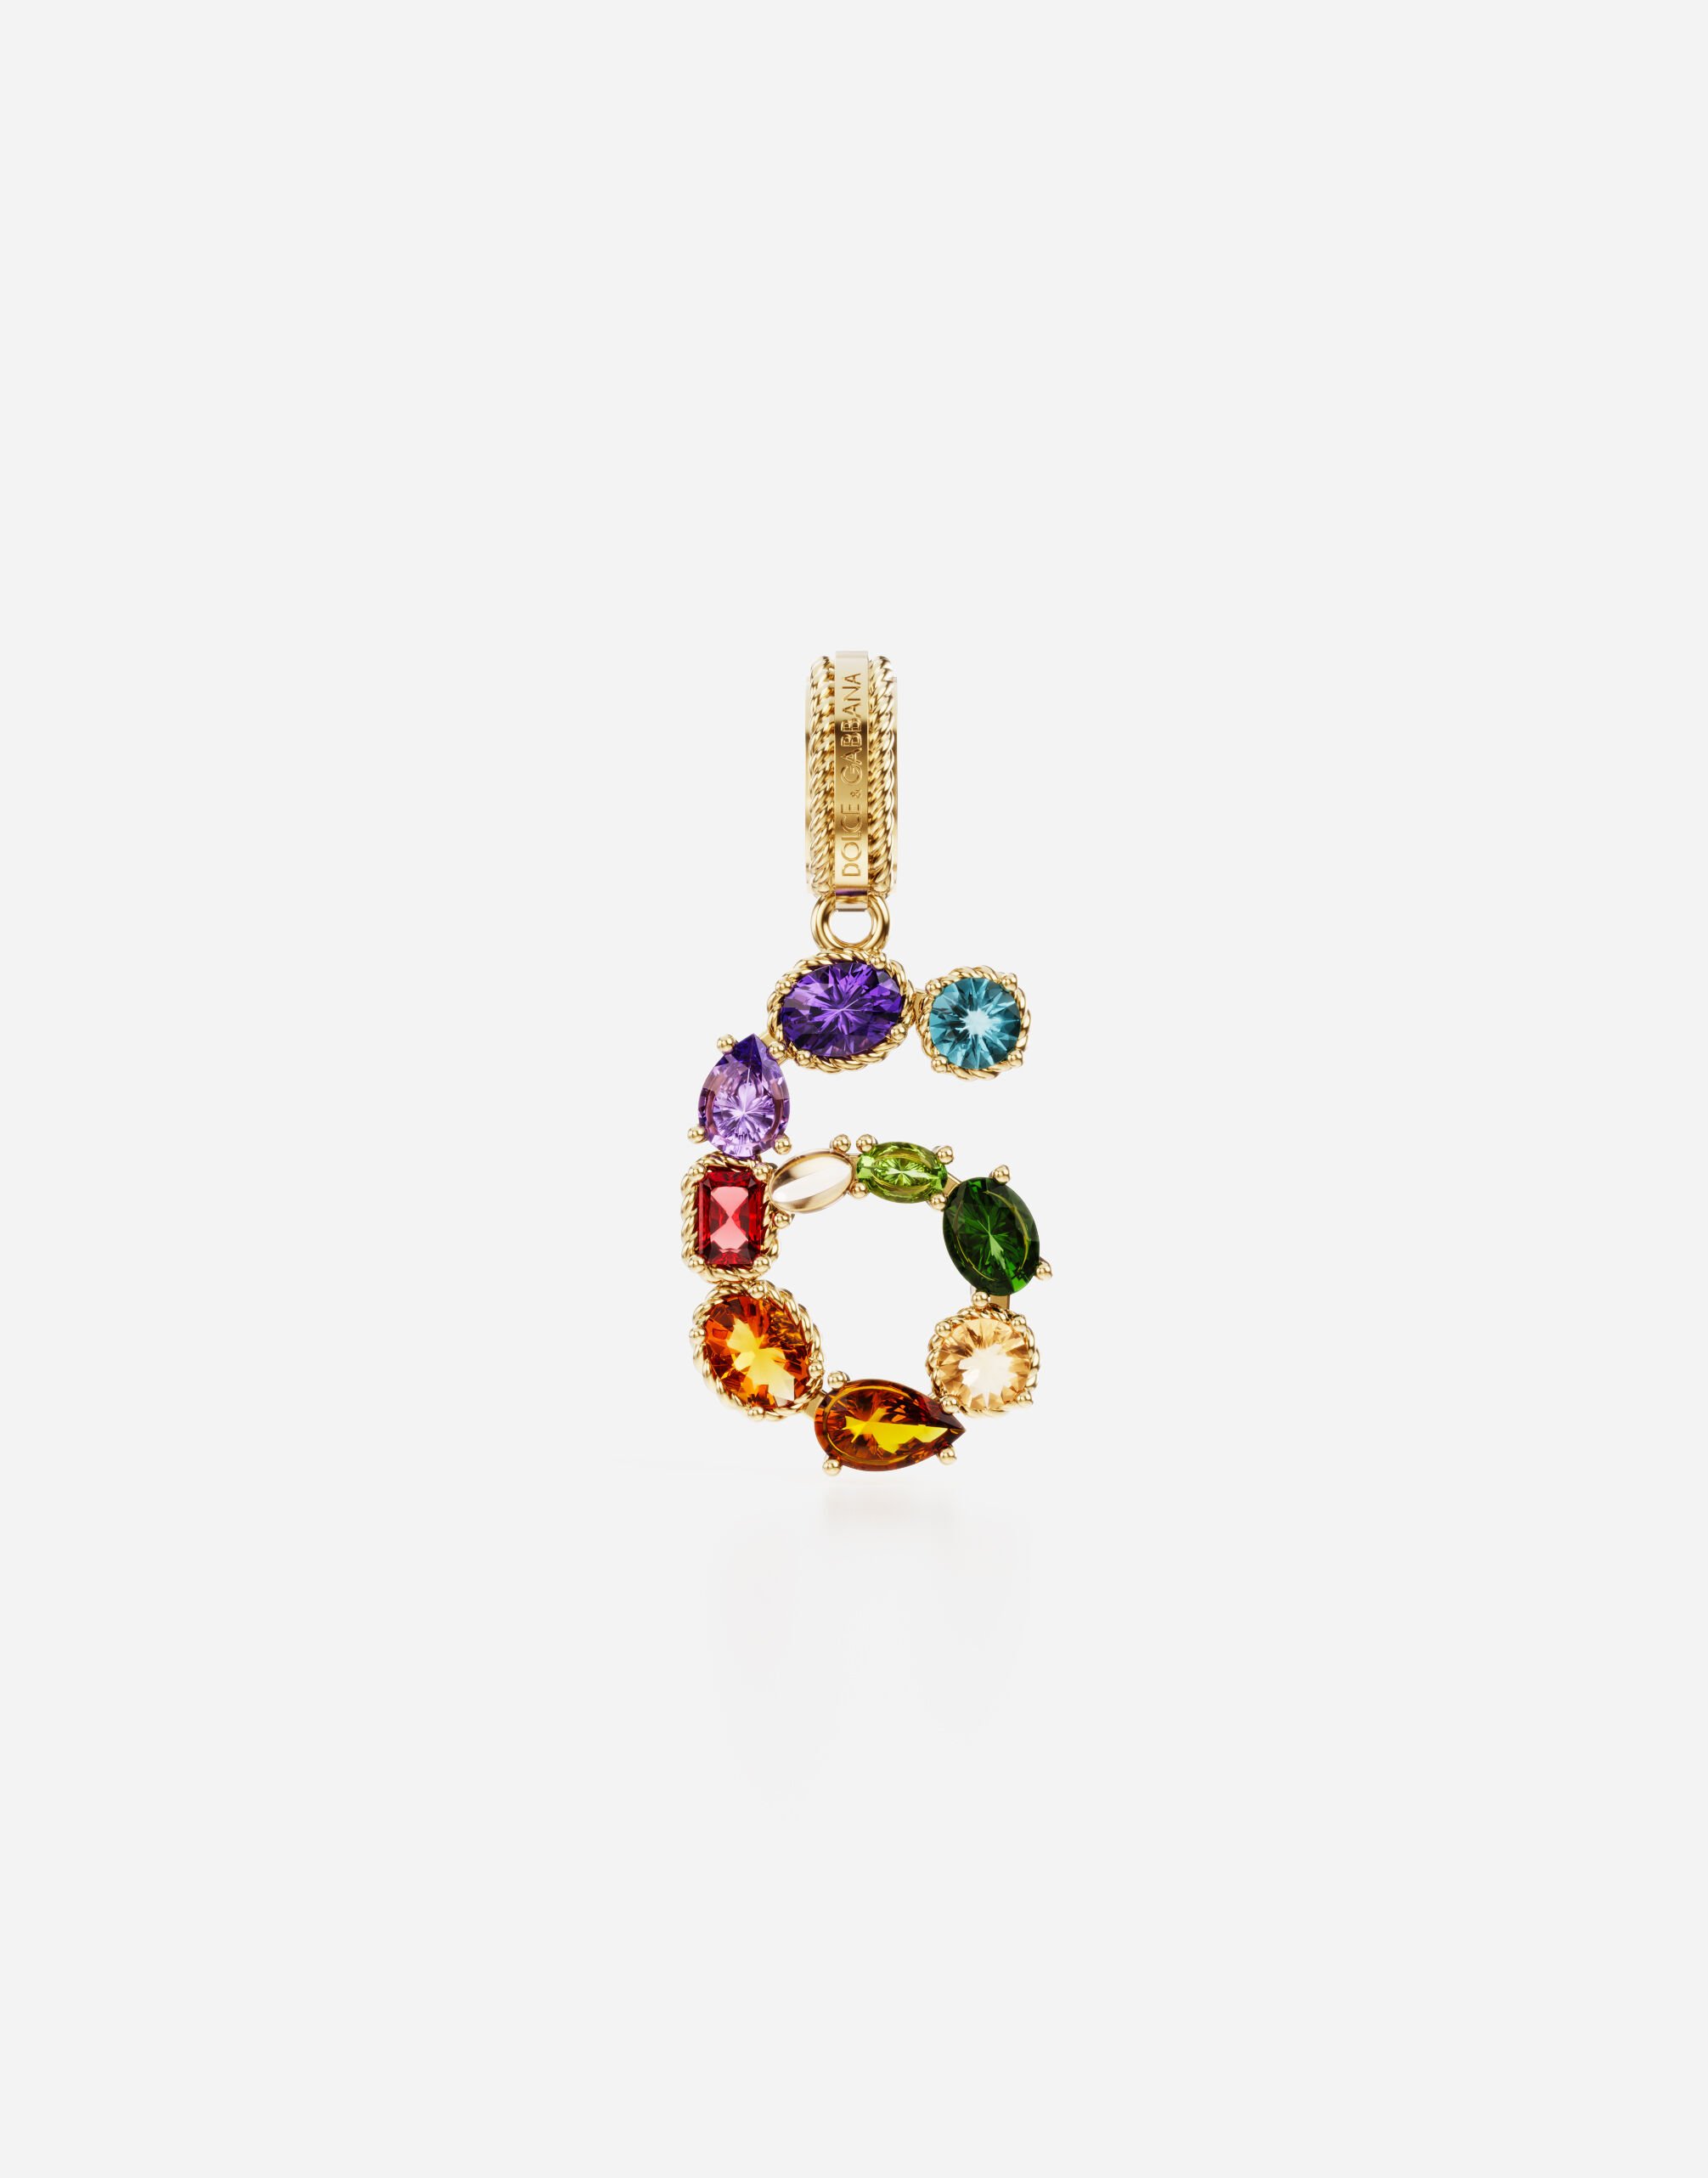 Dolce & Gabbana Anhänger „Rainbow“ aus 18 kt Gelbgold mit mehrfarbigen Edelsteinen, die die Zahl 6 darstellen GOLD WANR1GWMIXD